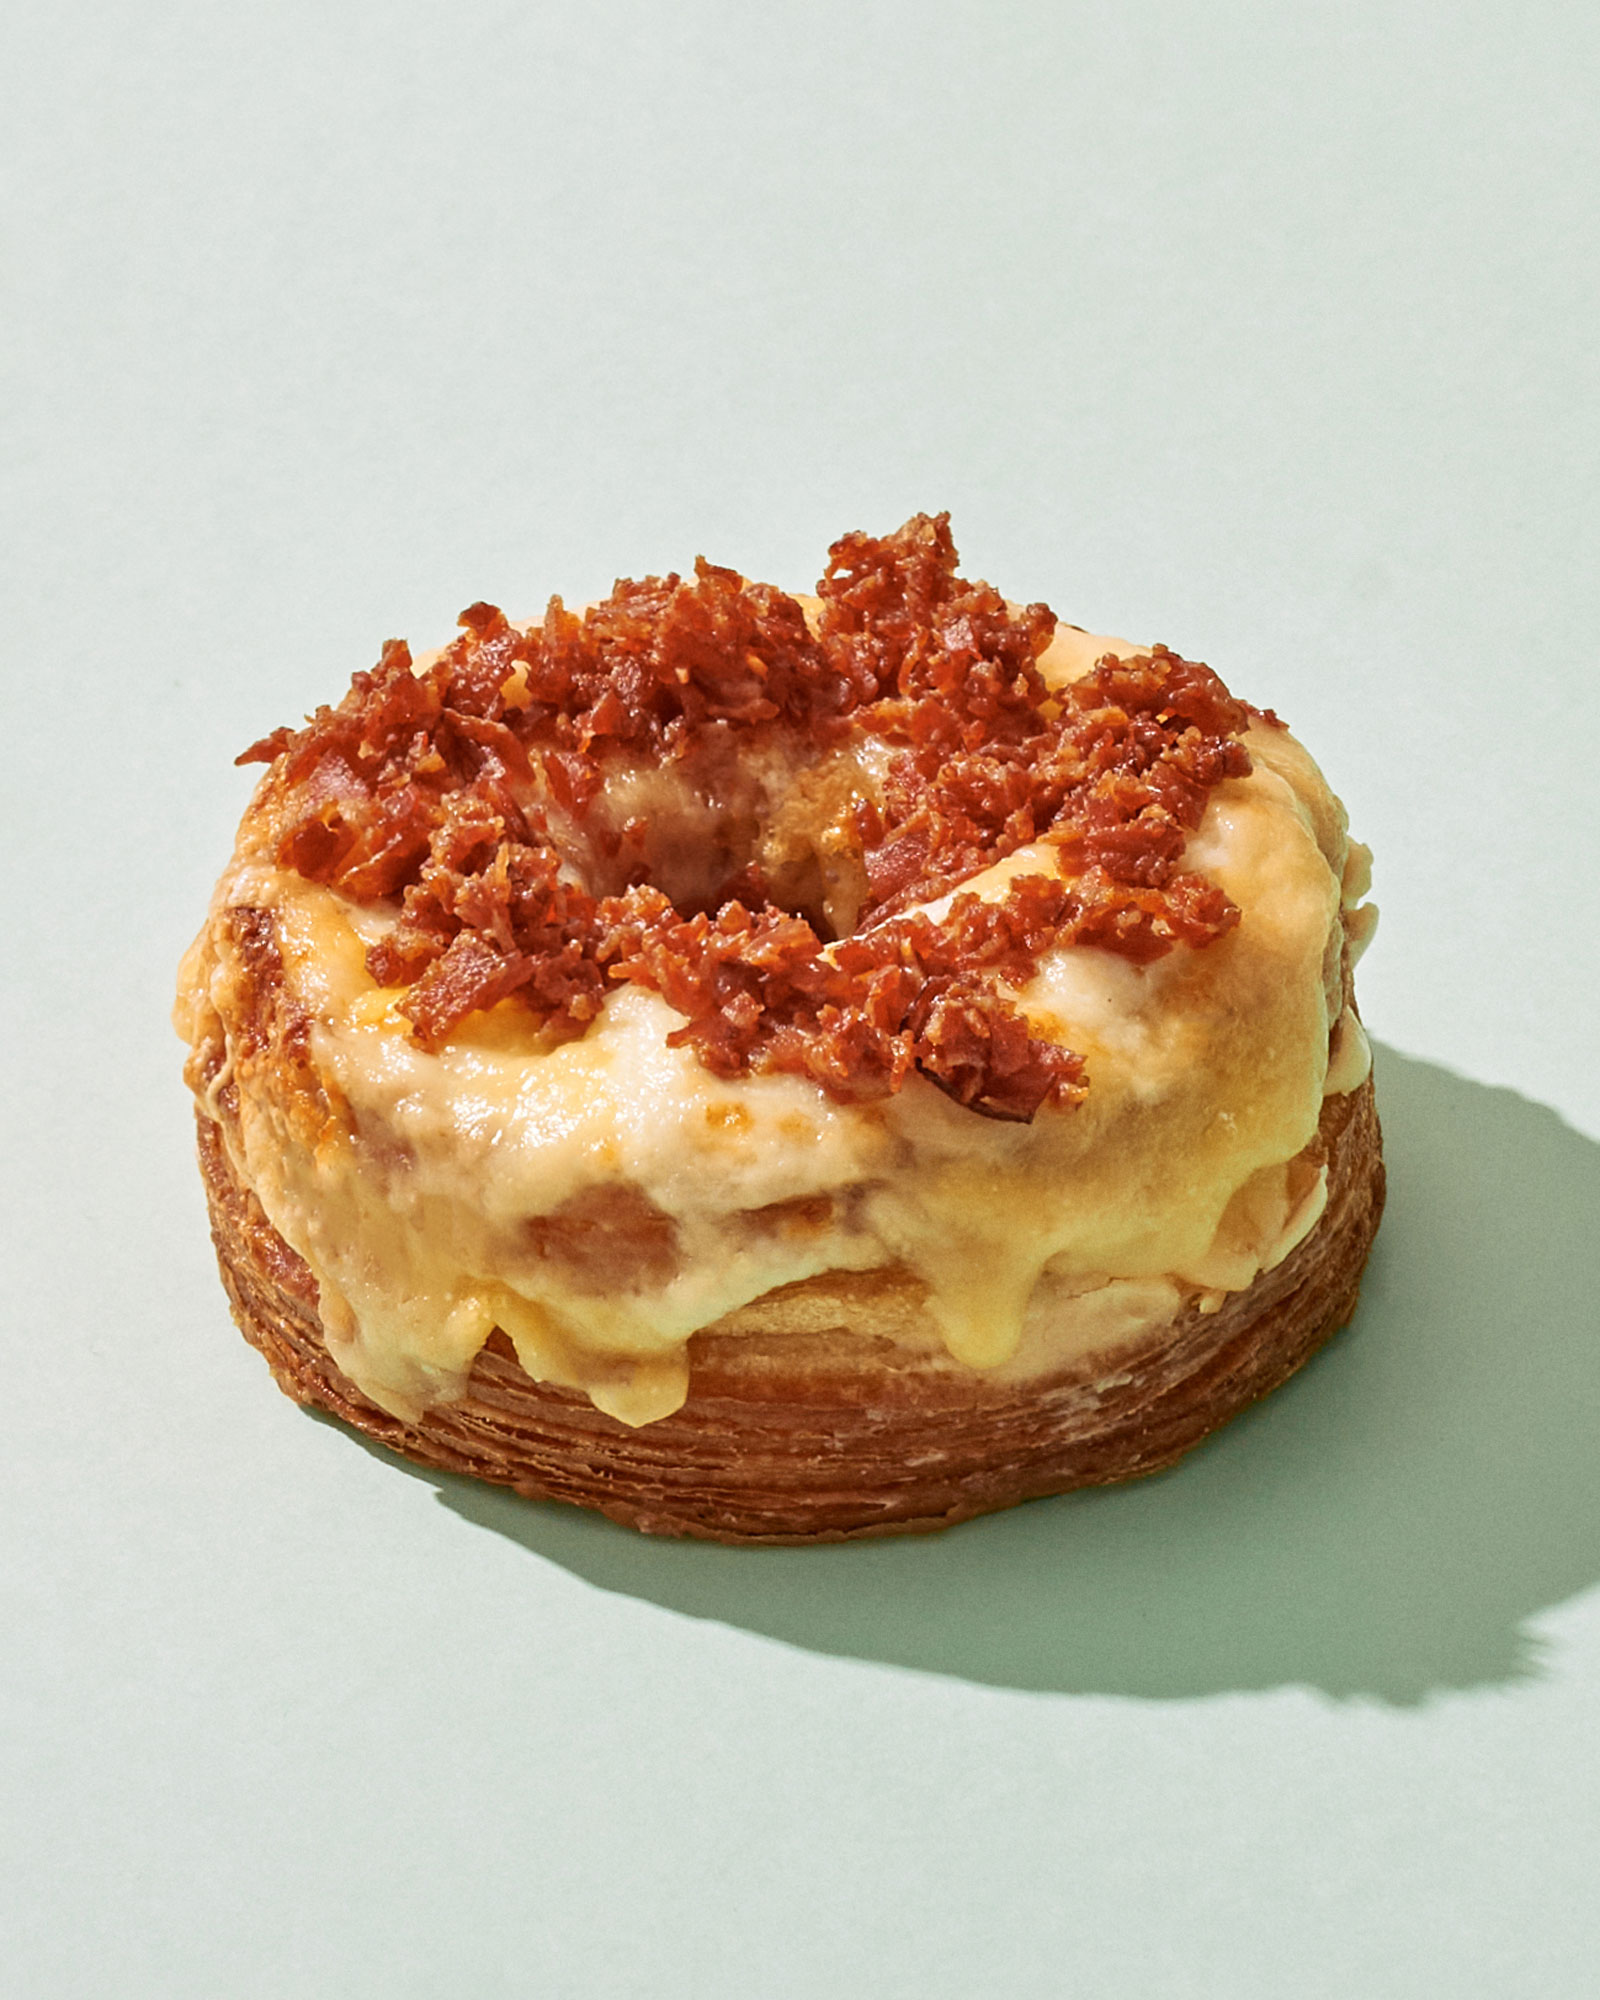 ¡Descubre la nueva edición limitada de Pastelería Mallorca: ¡El Cronut Monsieur!